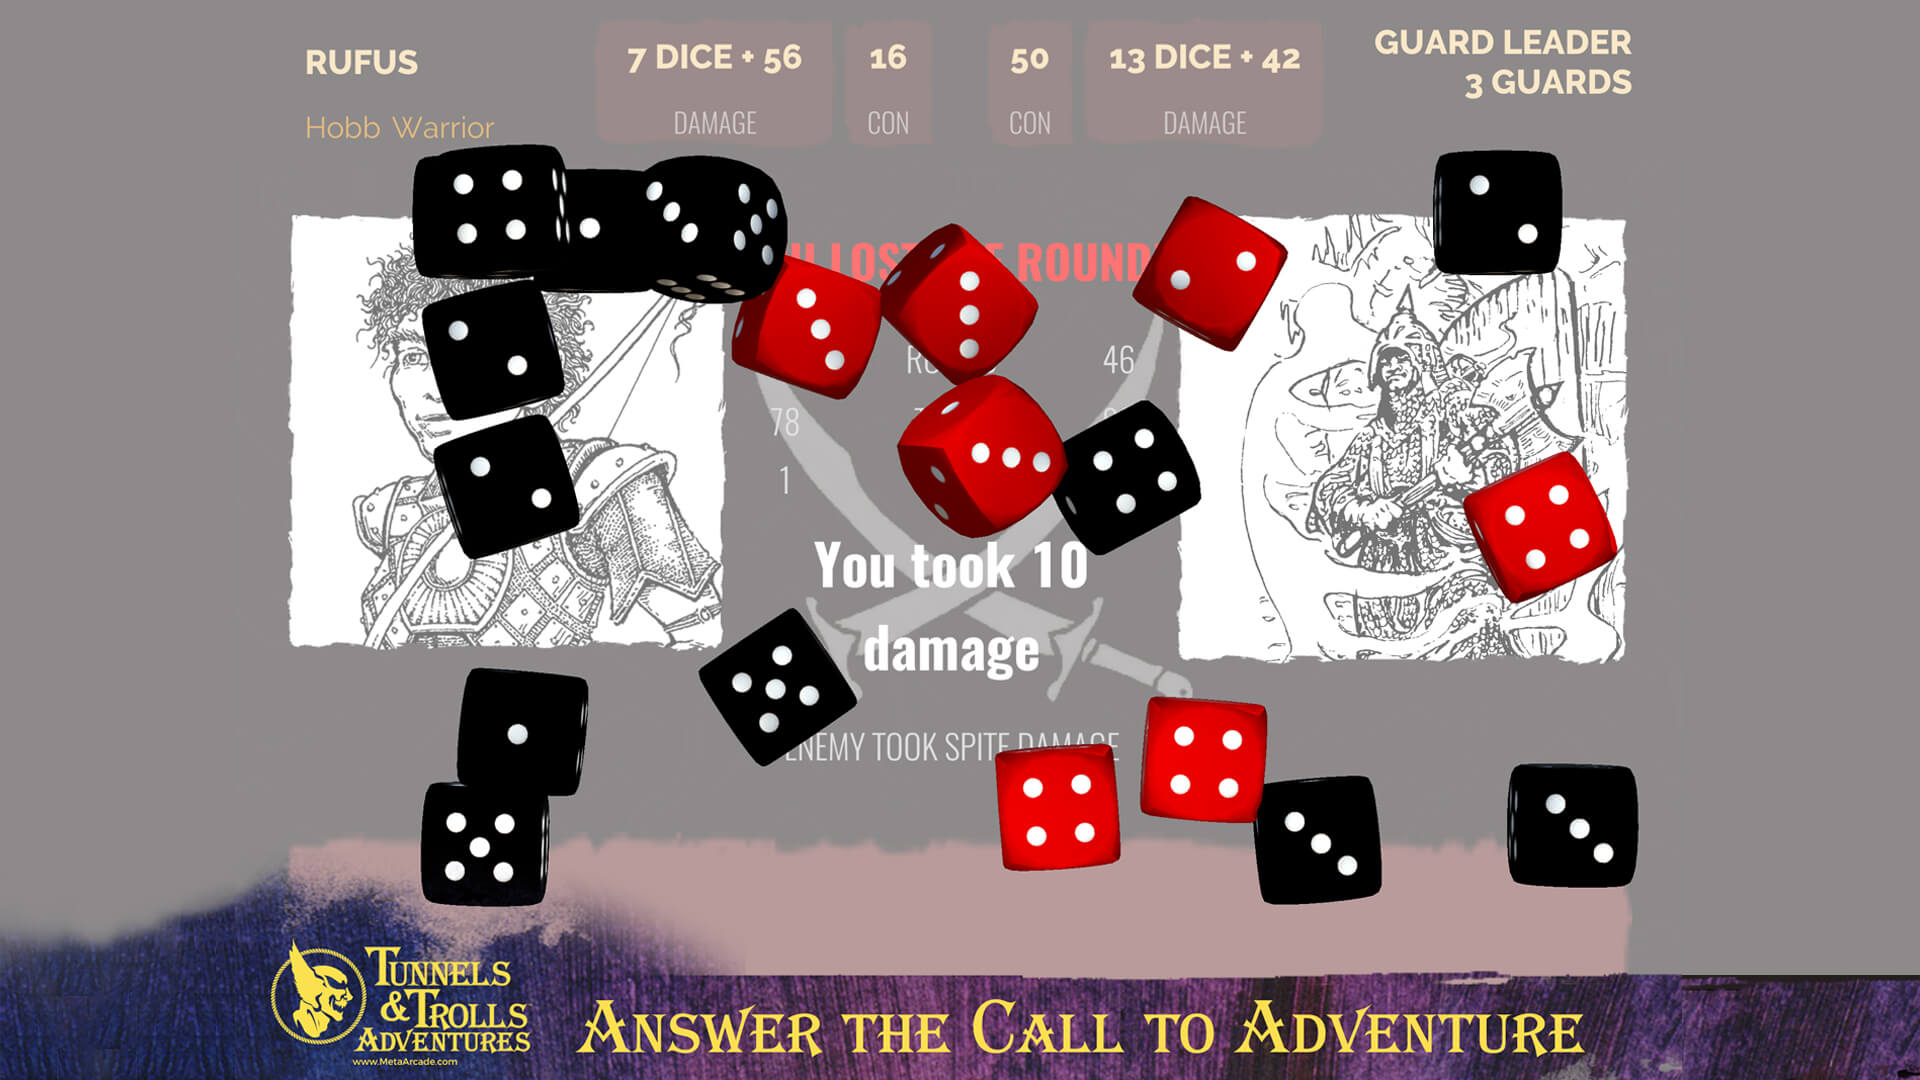 Dragonic Game Gameplay Screenshot Lava Mountain Dungeon